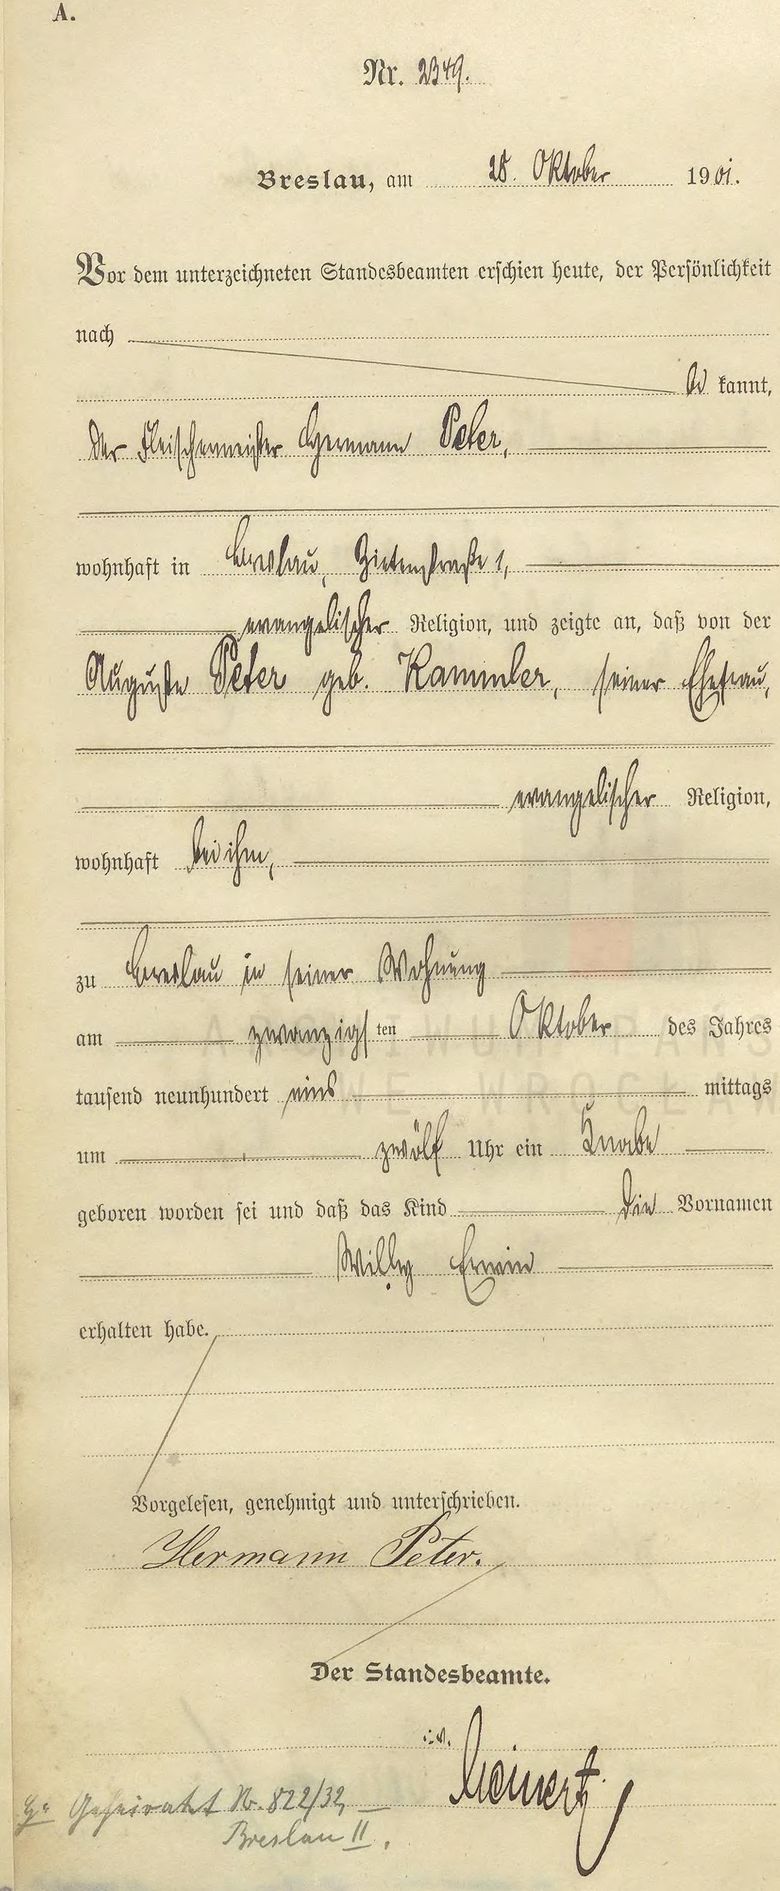 Peter, Willy Geburtsurkunde 1901